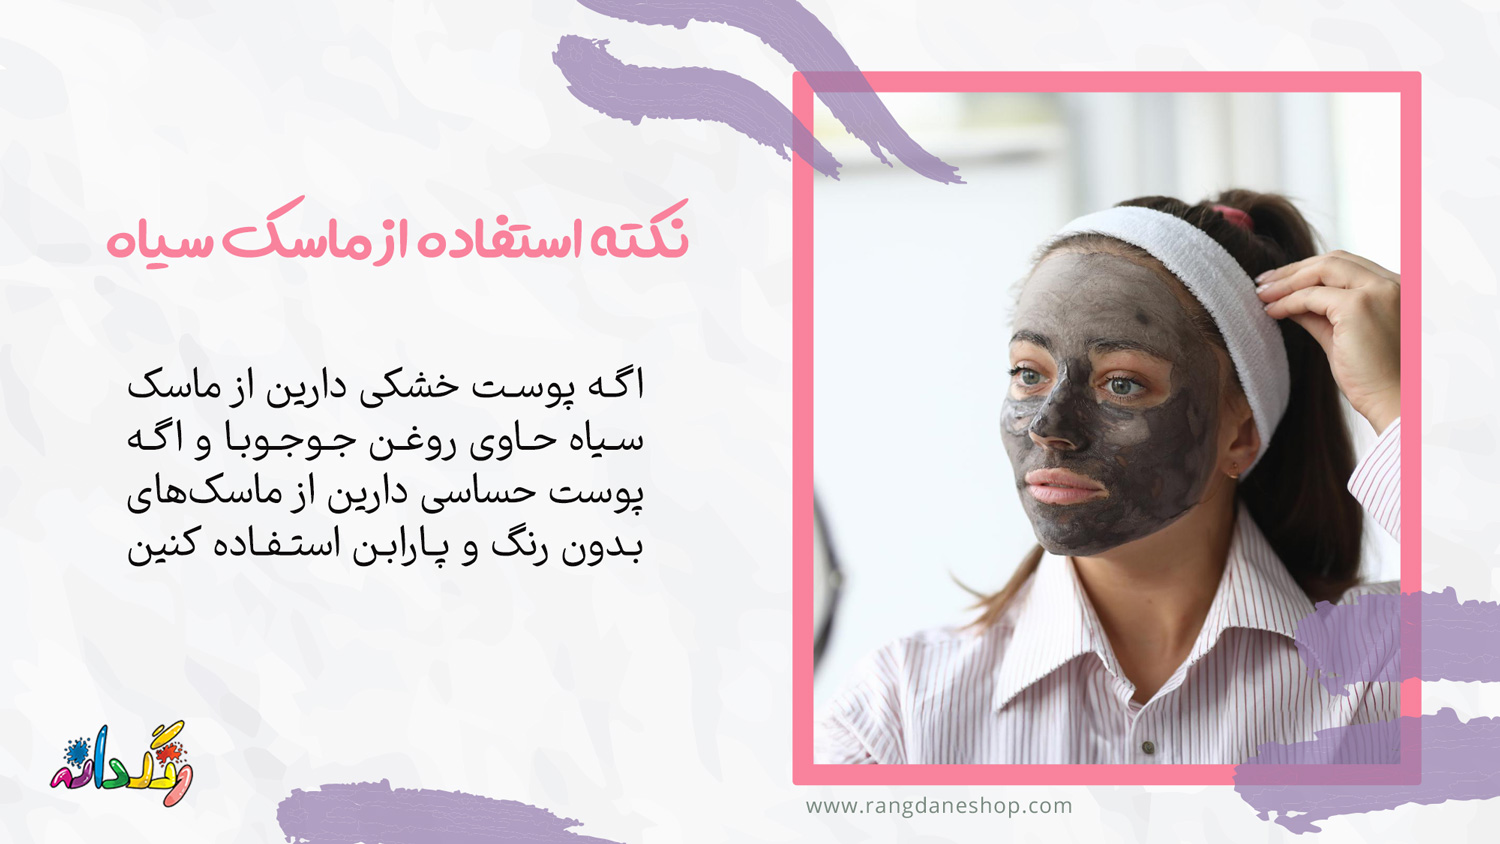 نکات مهم در مورد استفاده از ماسک سیاه صورت